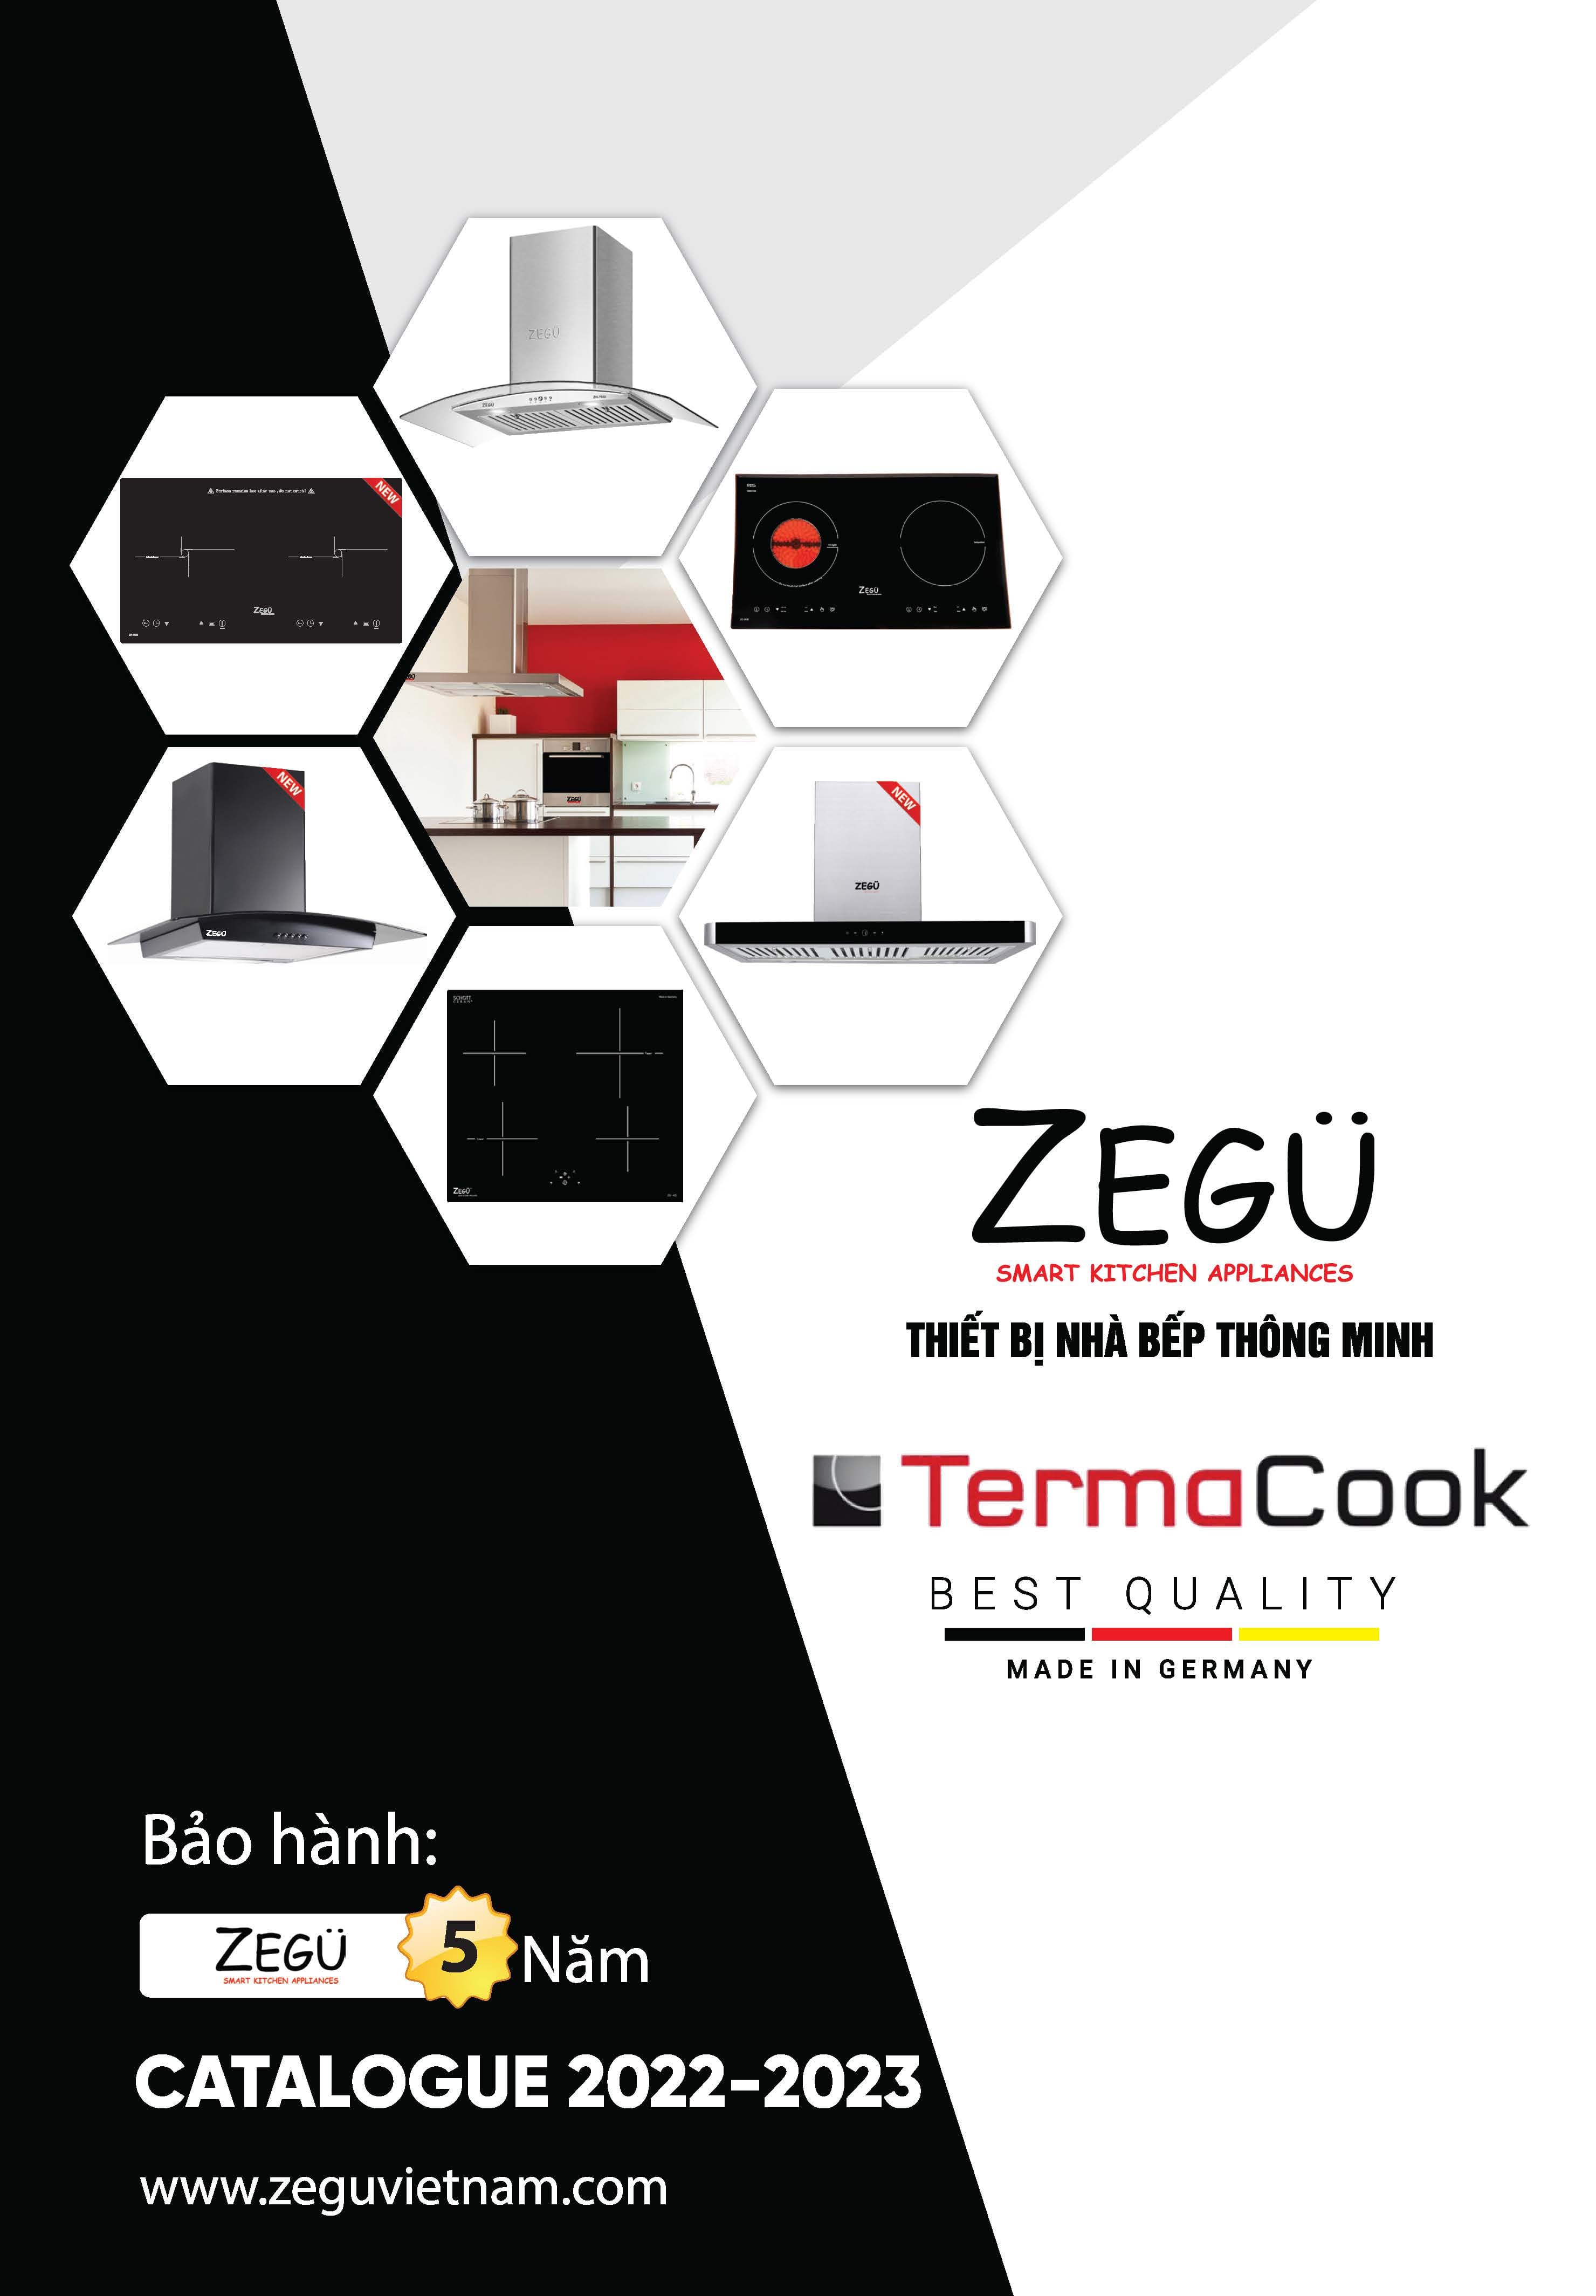 Catalouge thiết bị nhà bếp Zegu